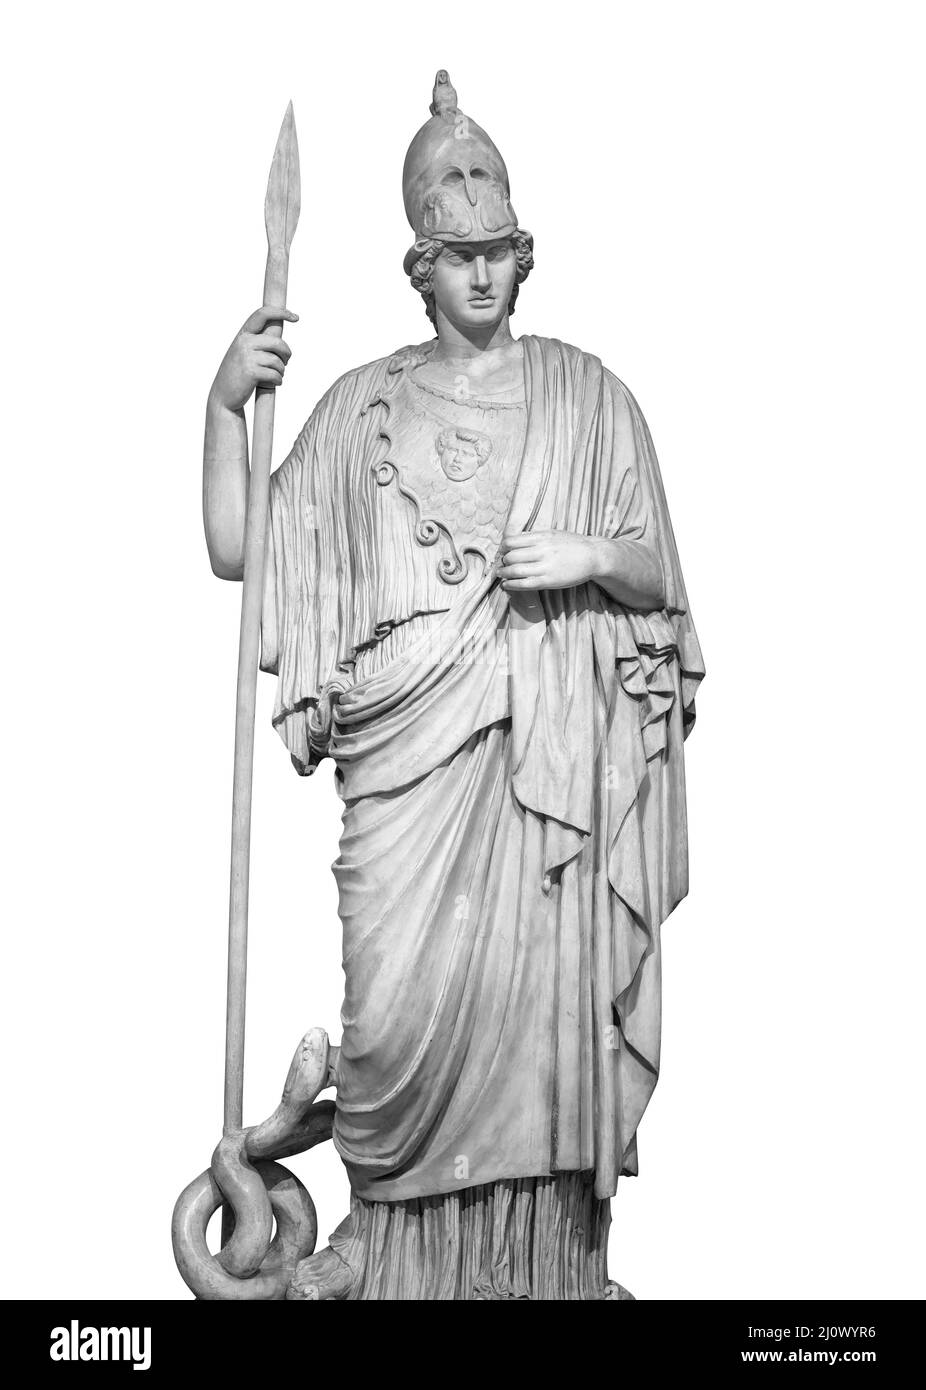 Ancienne statue grecque romaine de la déesse Athéna dieu de la sagesse et des arts sculpture historique isolée sur blanc avec la peau de coupure Banque D'Images